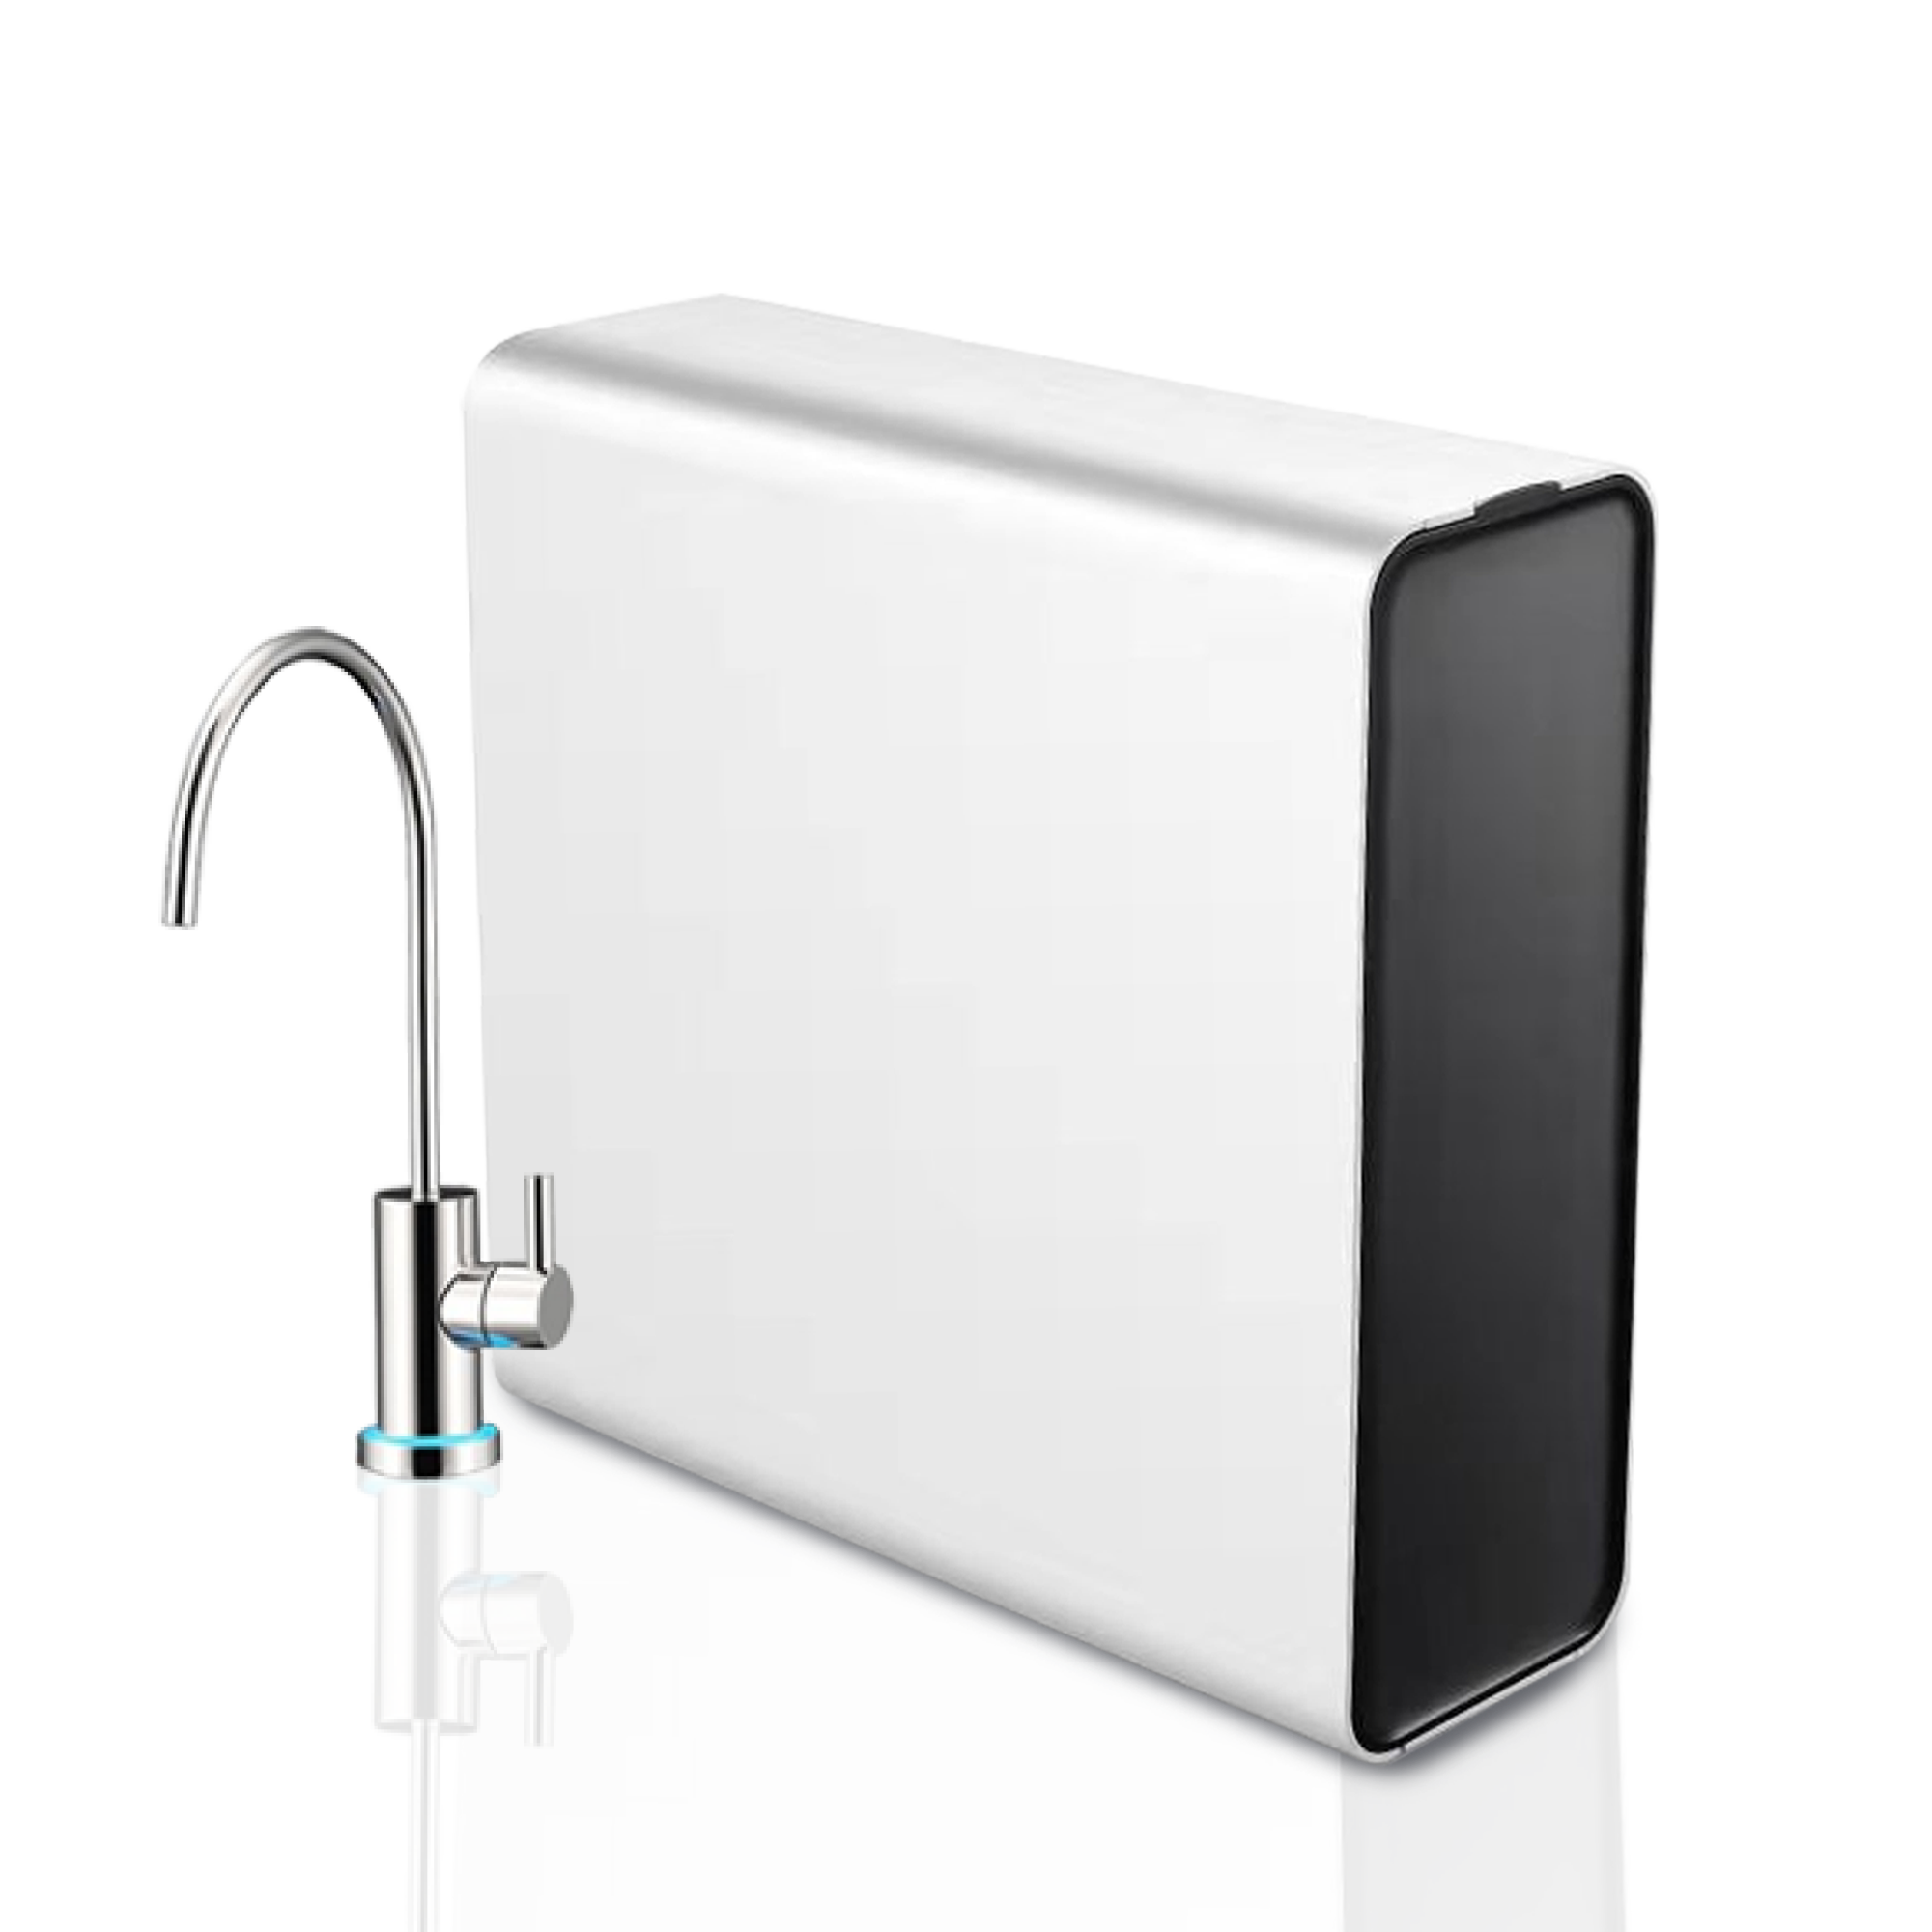 جهاز تنقية المياه للمنزل Electic جهاز تنقية تحت المغسلة يوفر المساحة